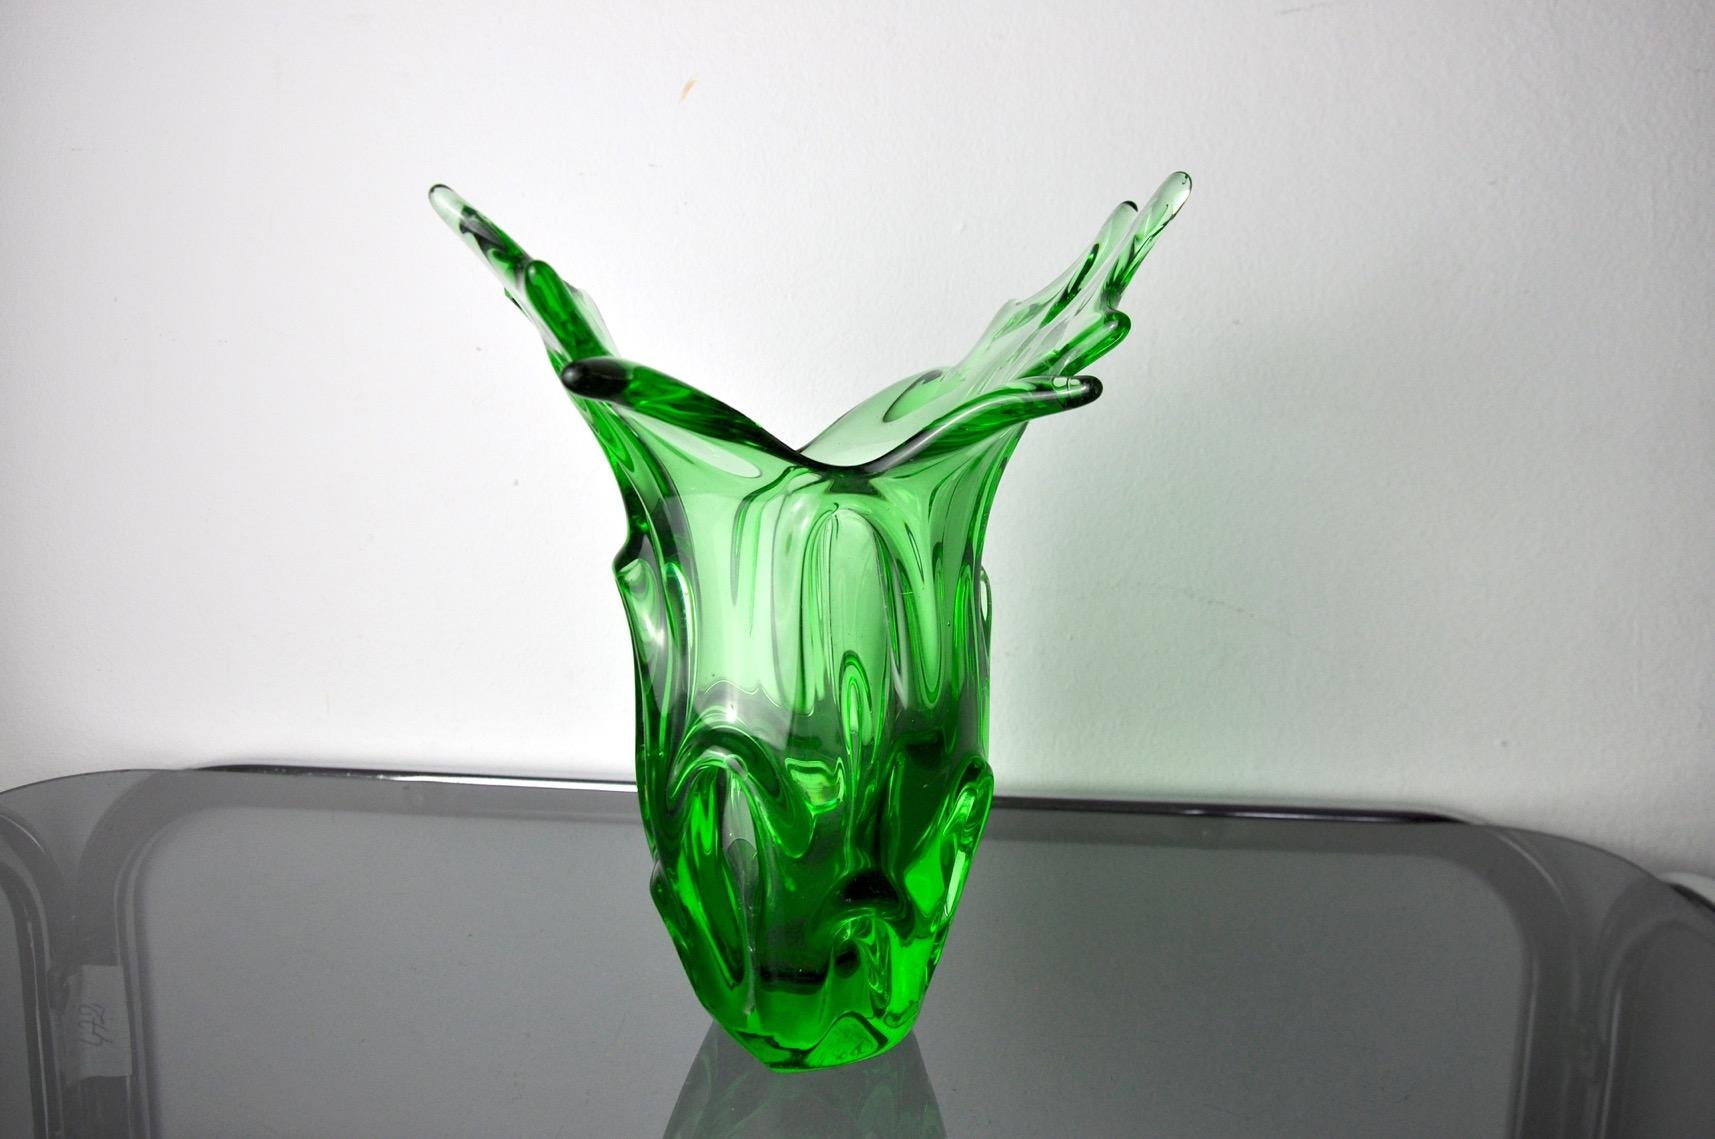 Vase en verre d'art italien soufflé à la main de couleur verte Sommerso. Attribué à seguso, murano italie, années 1960. Ce vase coloré présente un beau design avec des détails dessinés et un bord côtelé selon la technique du sommerso. Utilisez-le